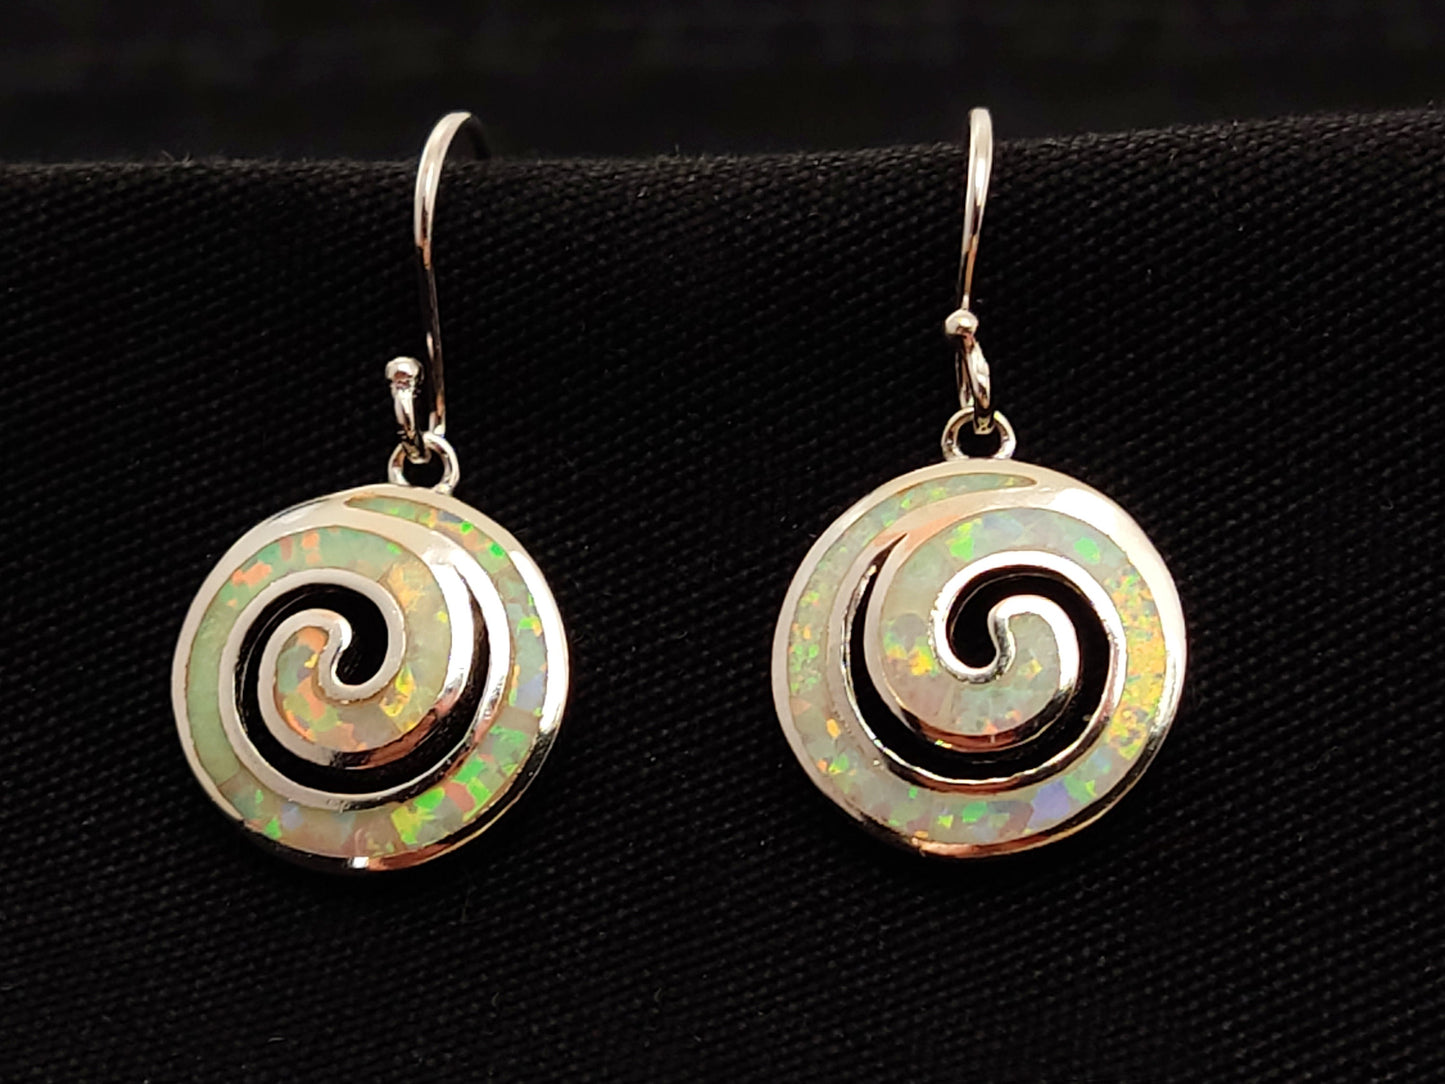 Sterling Silber 925 griechische Spirale Feuer weißer Opal Ohrringe 15mm, griechischer Opal Spirale Ohrringe, griechischer Schmuck, griechischer Opal Ohrringe